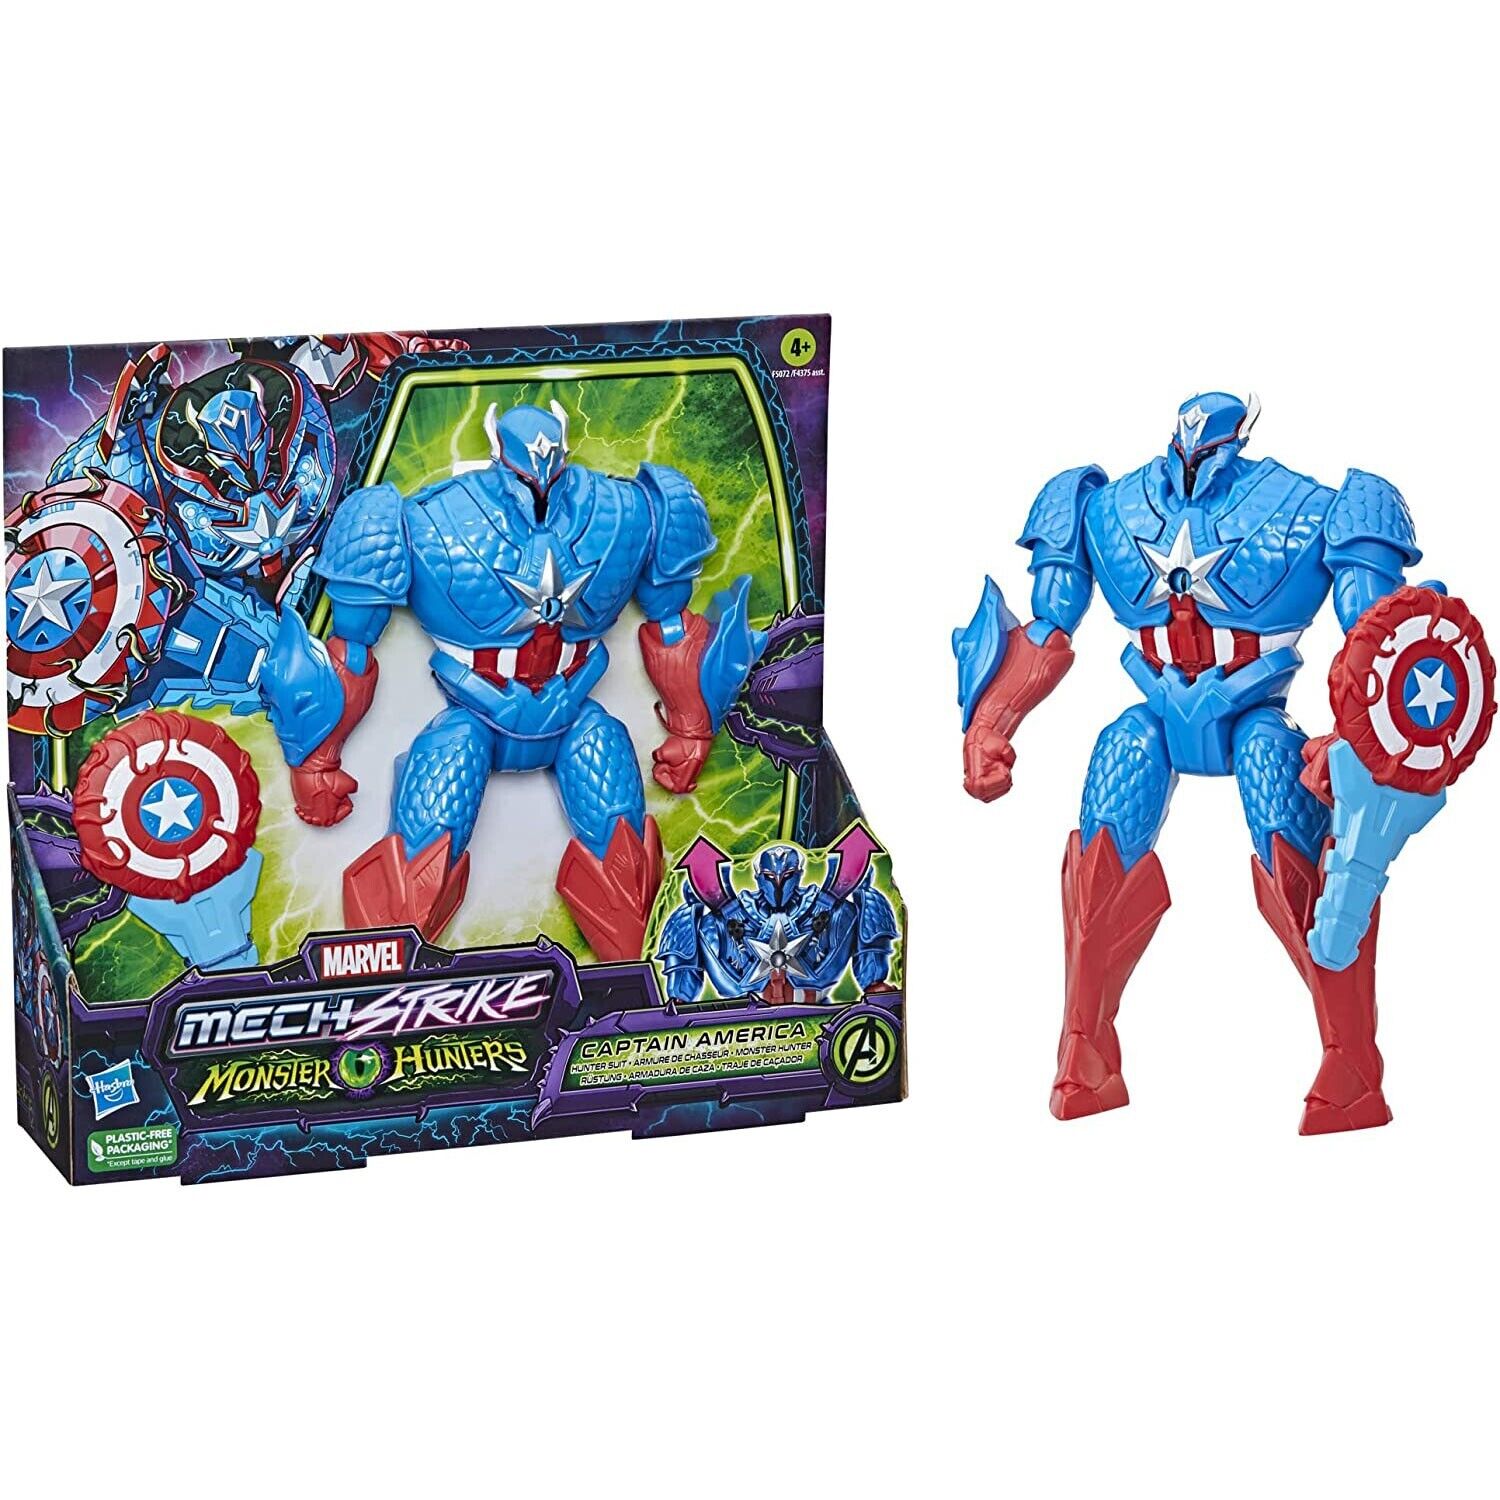 Marvel Avengers Mech Strike Hunter Suit Captain America Figure - New in Box